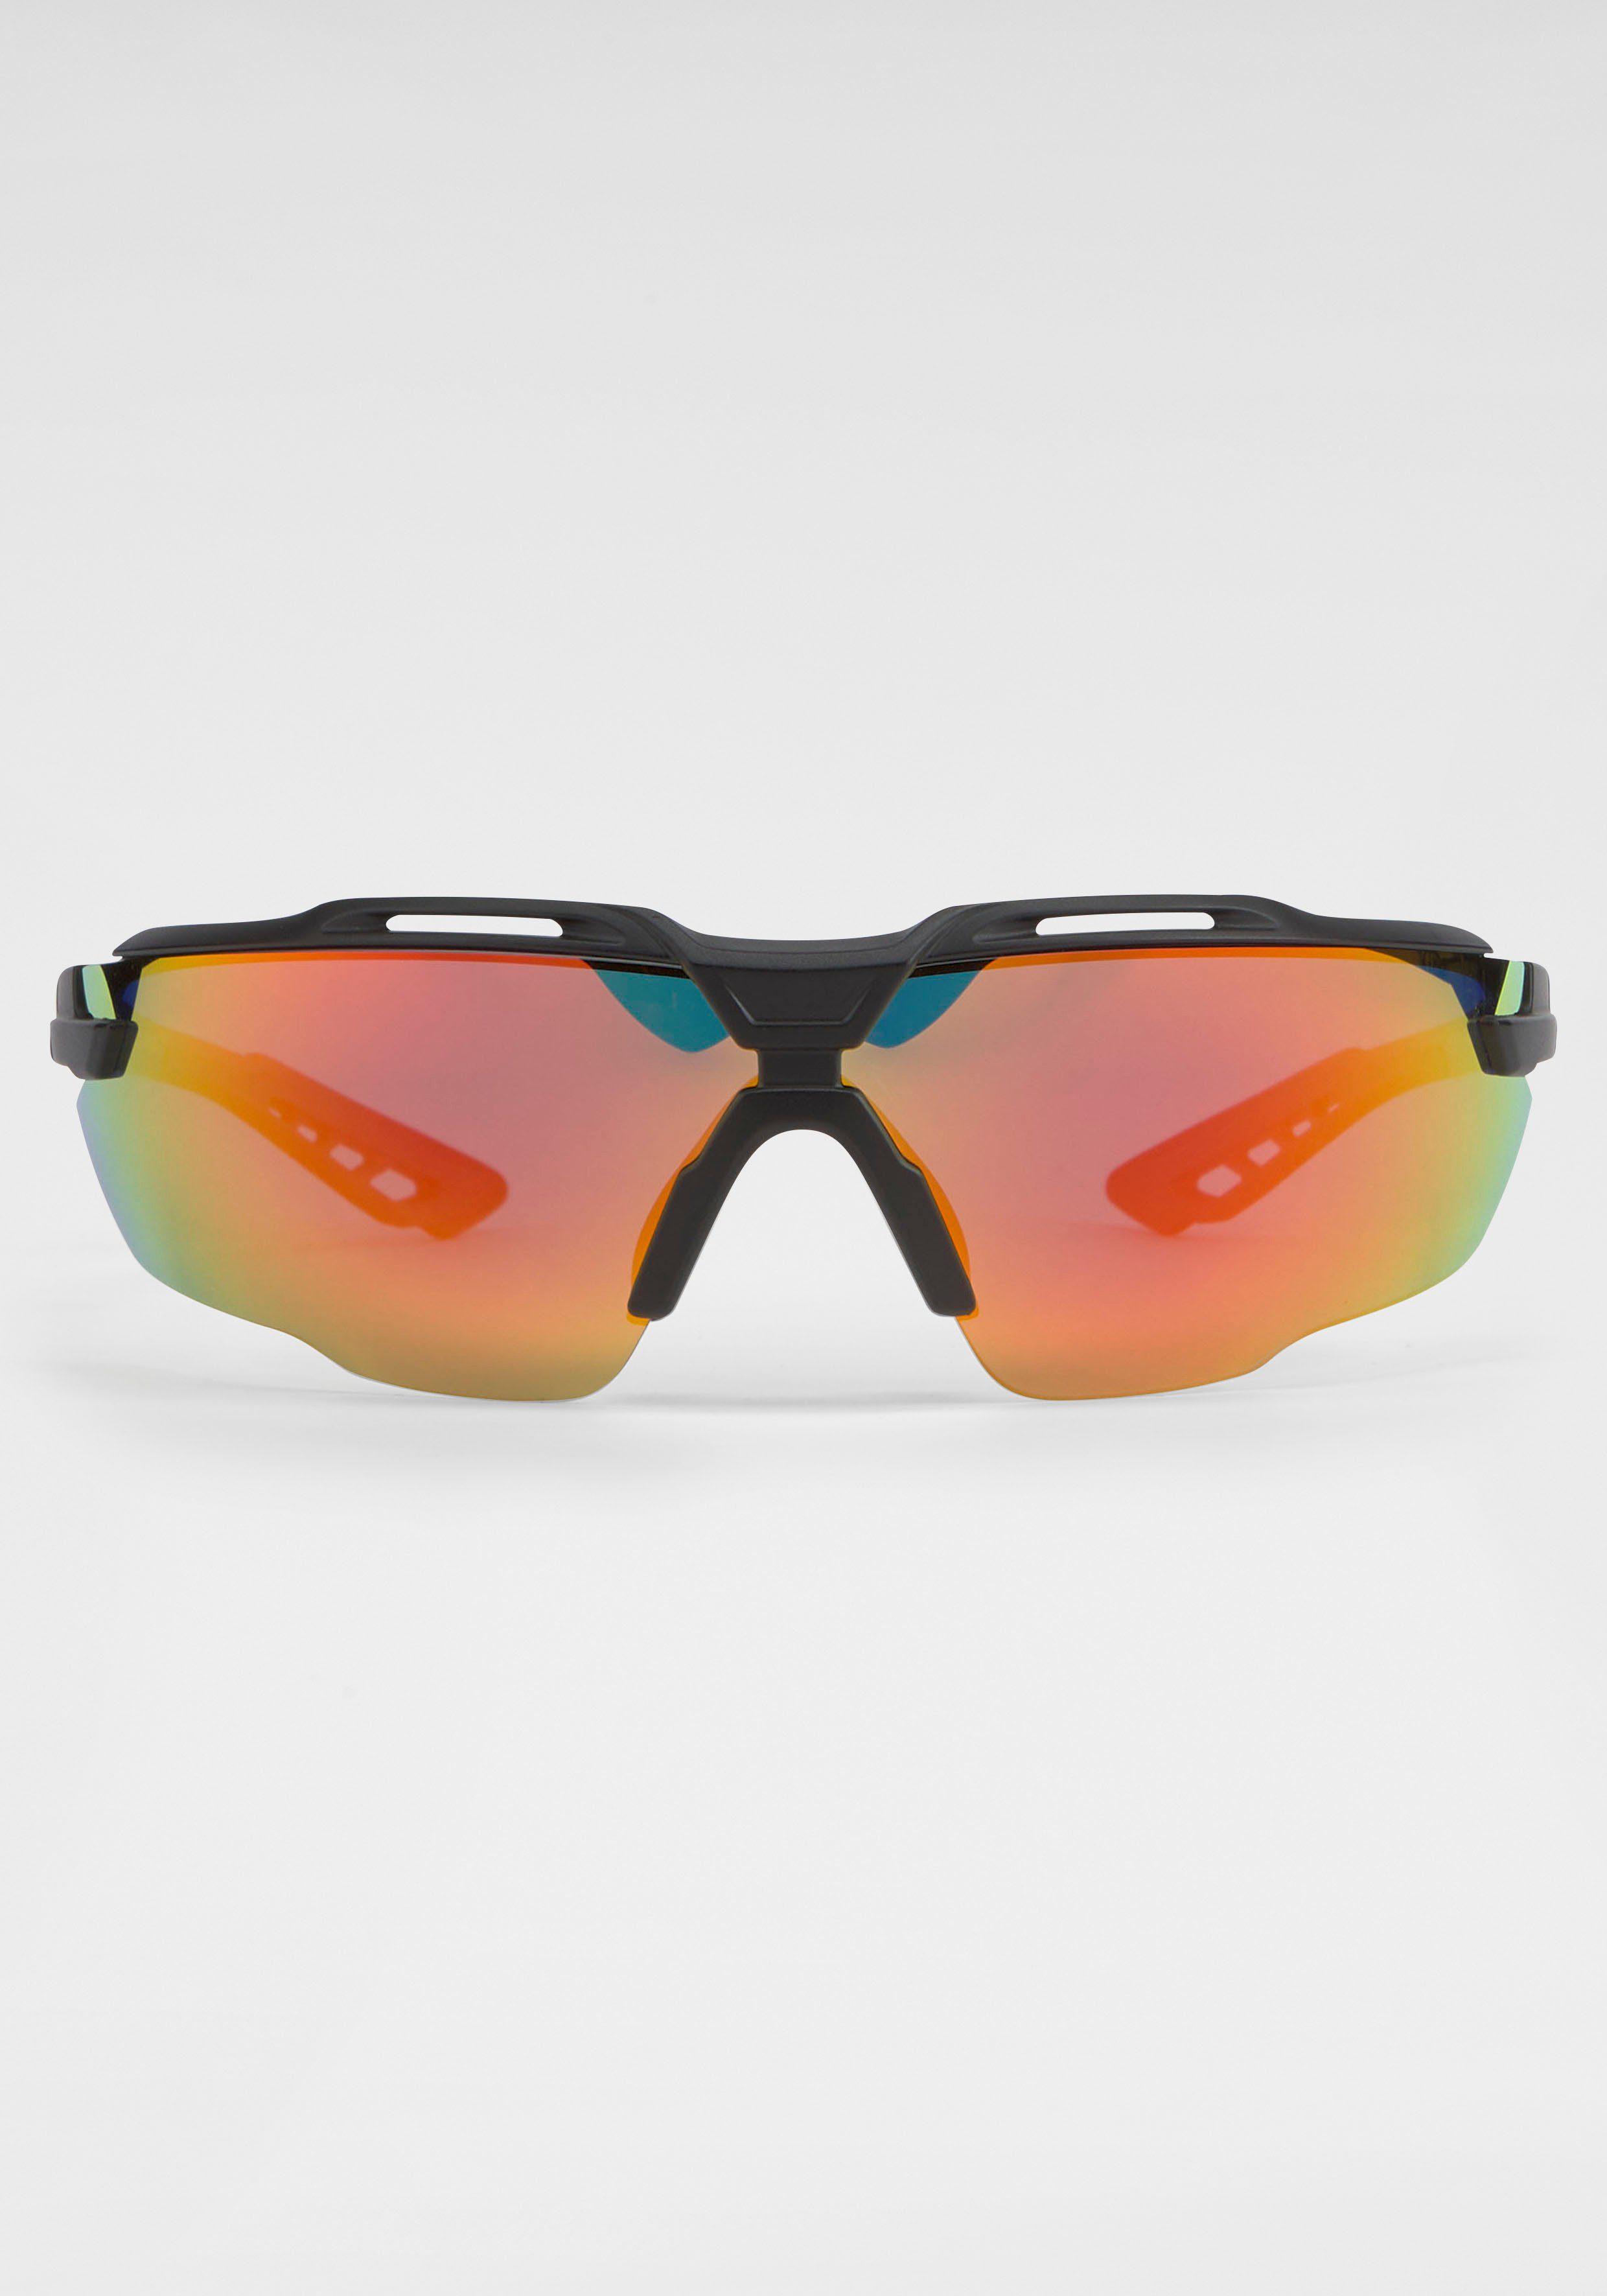 Sonnenbrille Gläsern gebogenen BLACK Eyewear schwarz-orange mit BACK IN